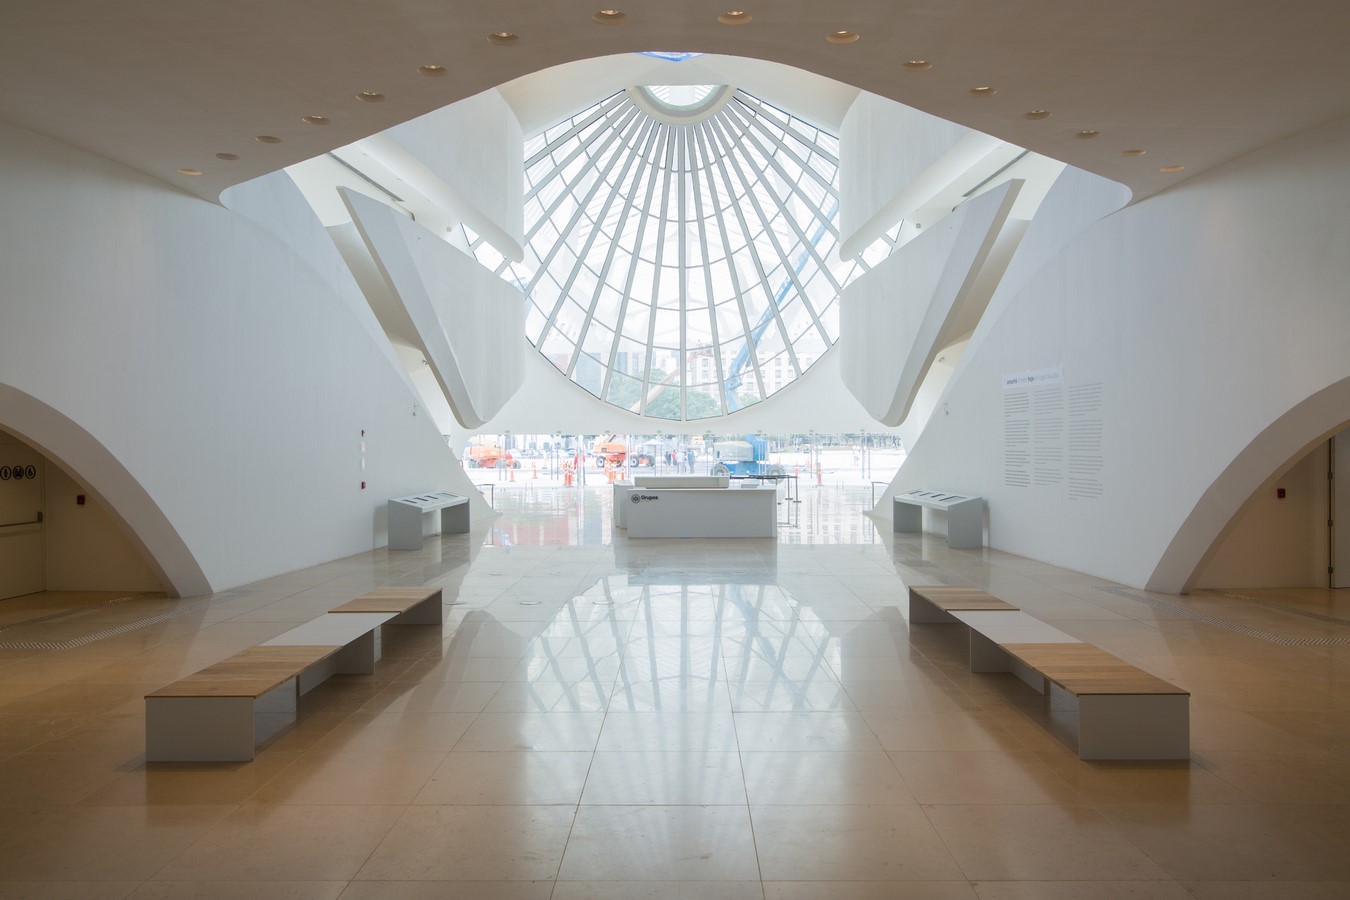 Museu do Amanhã, Brazil by Calatrava: Inspired by the Carioca culture - Sheet9